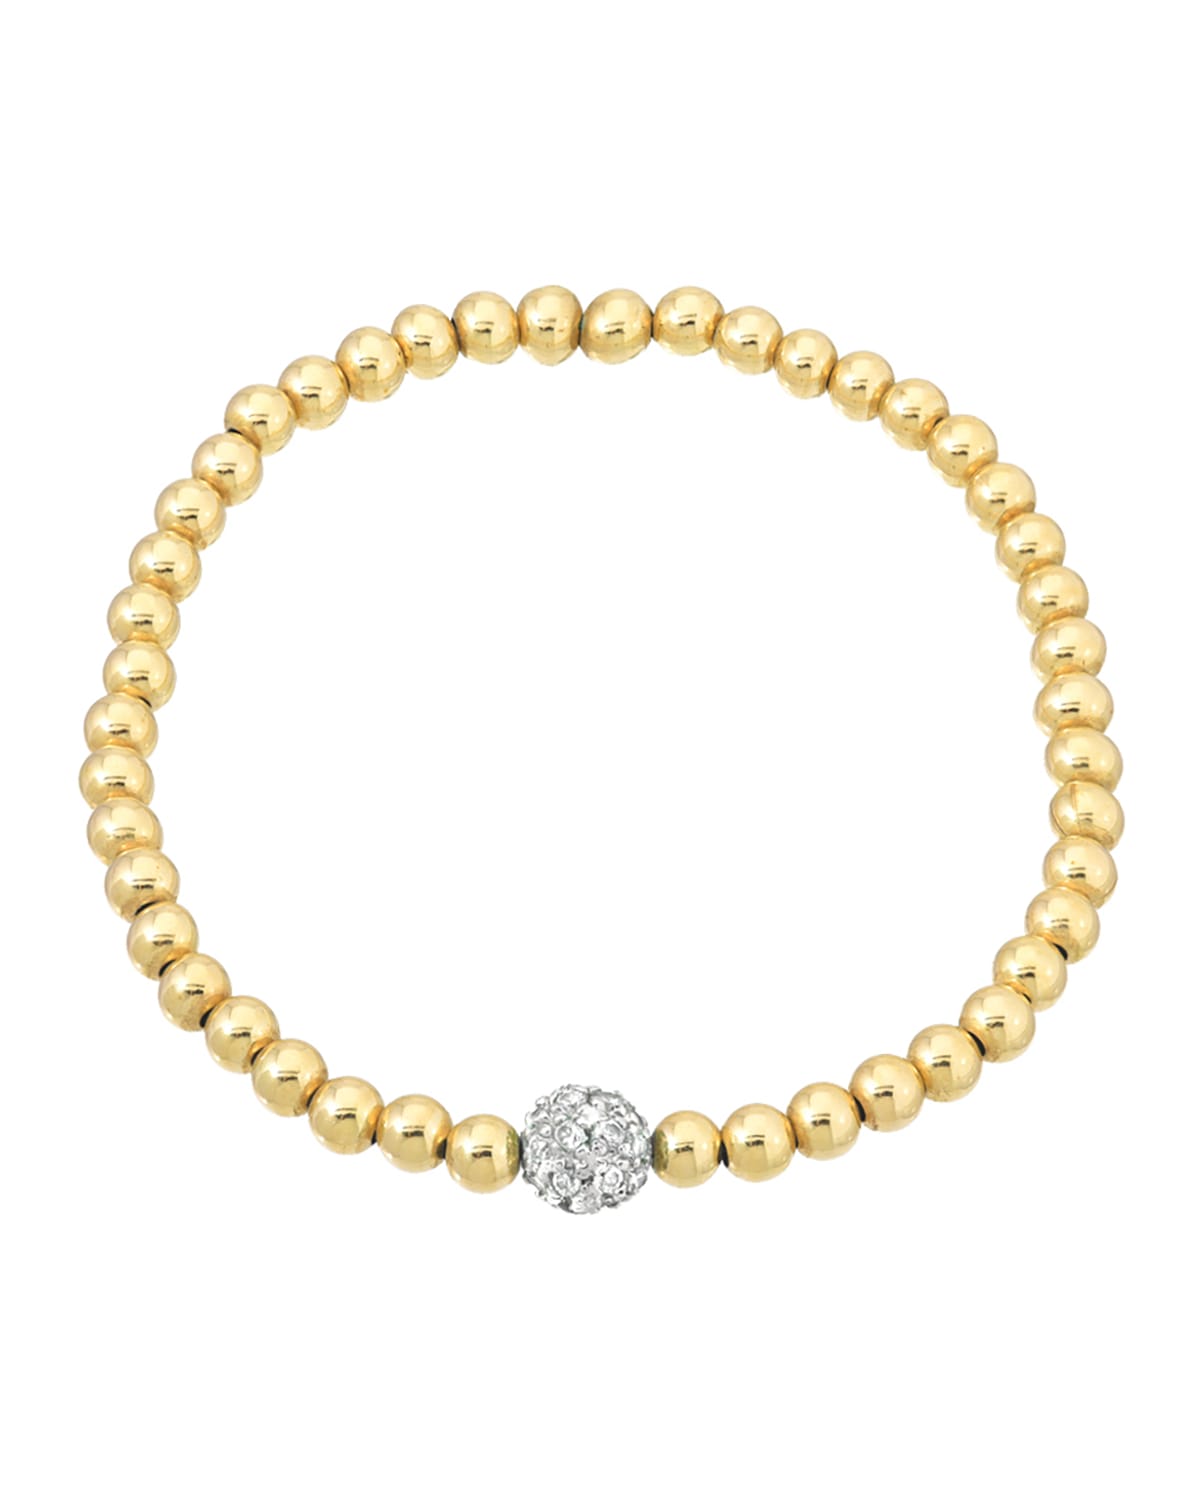 Zoe Lev Jewelry 14k 5mm Bead Bracelet W/ Diamond Center In Gold